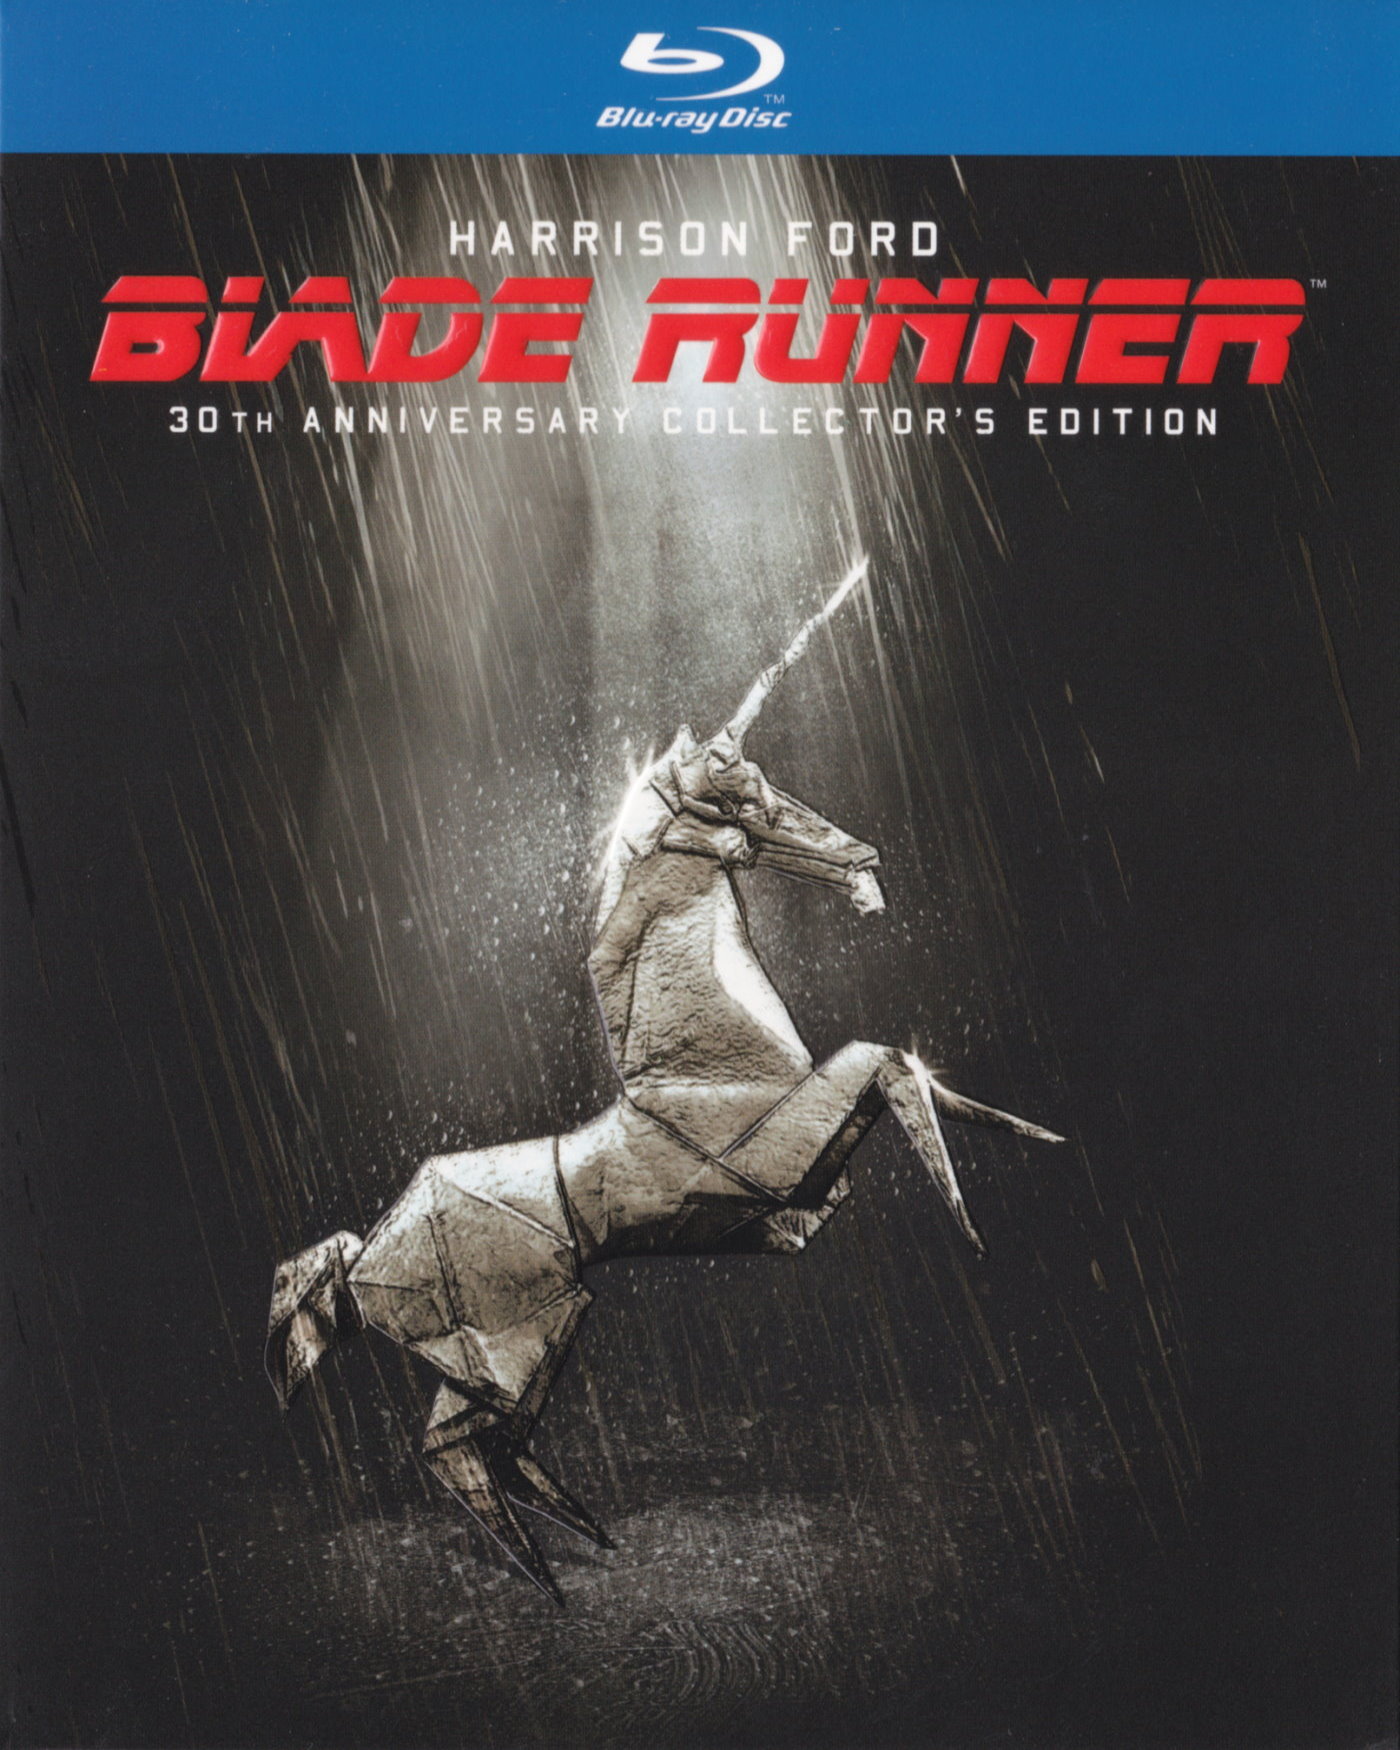 Cover - Der Blade Runner.jpg